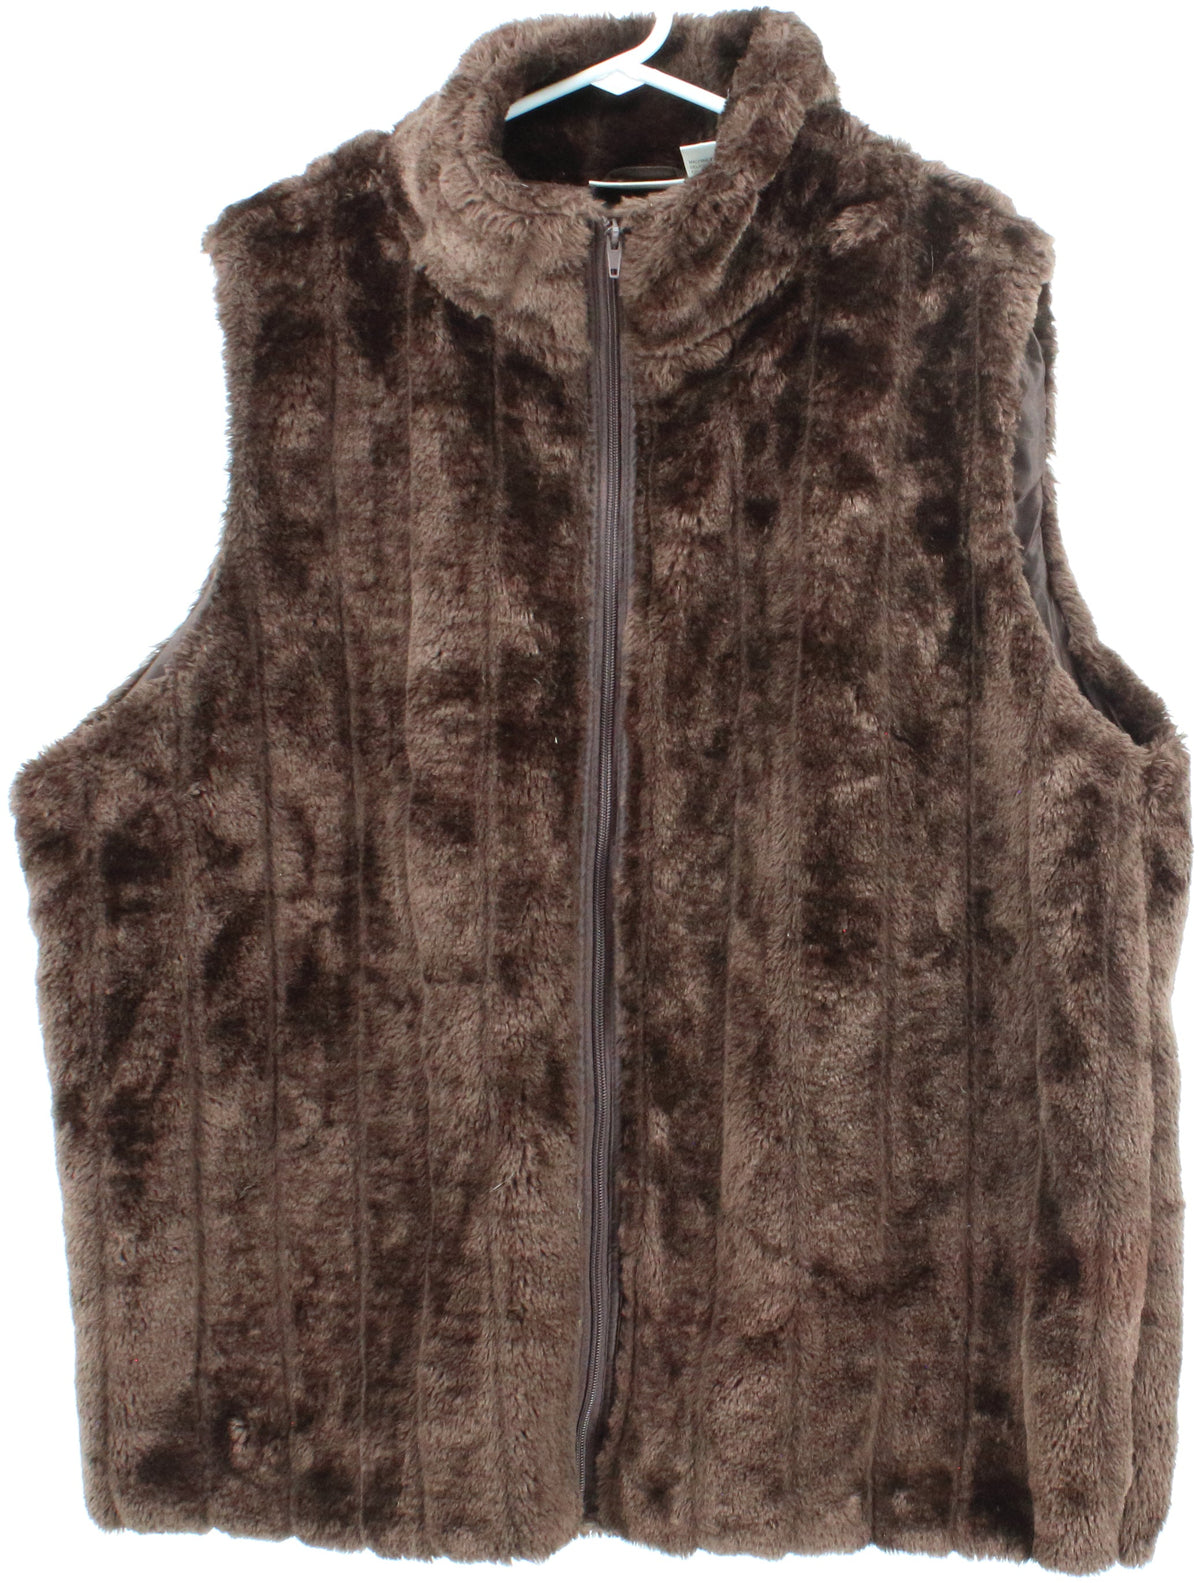 Collections Etc. Brown Faux Fur Vest